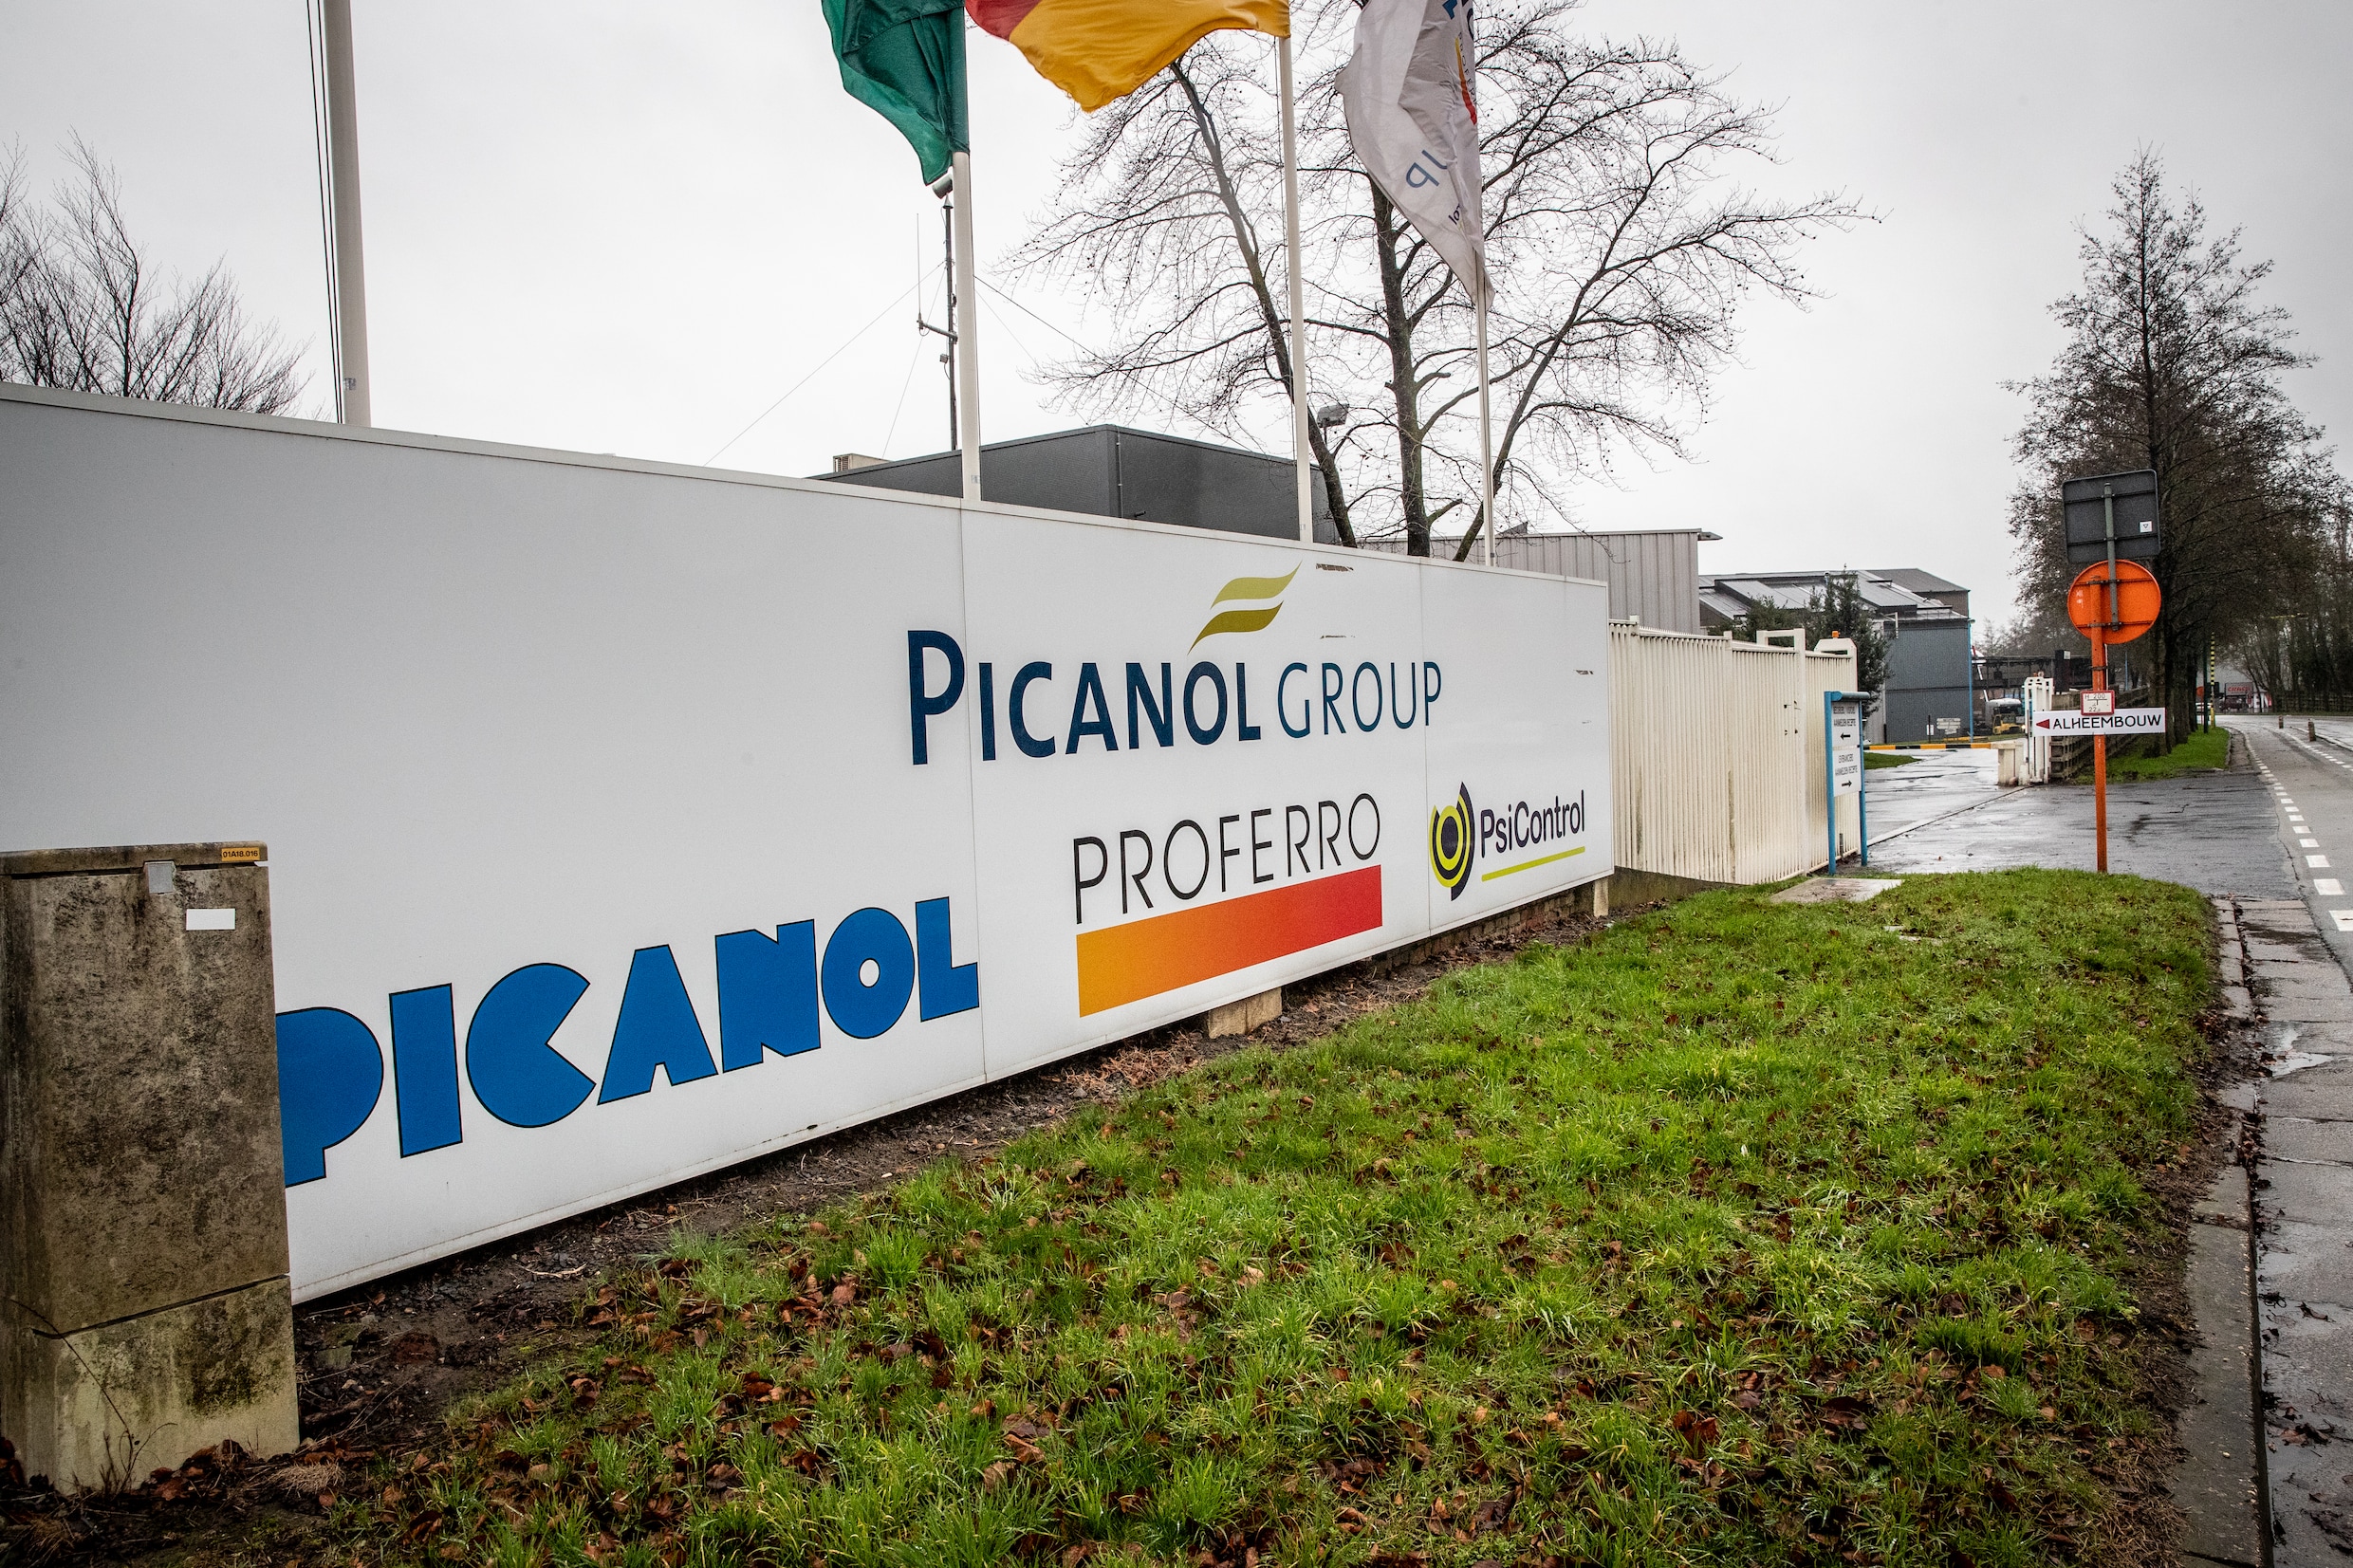 Picanol herstart maandag voorzichtig de activiteiten